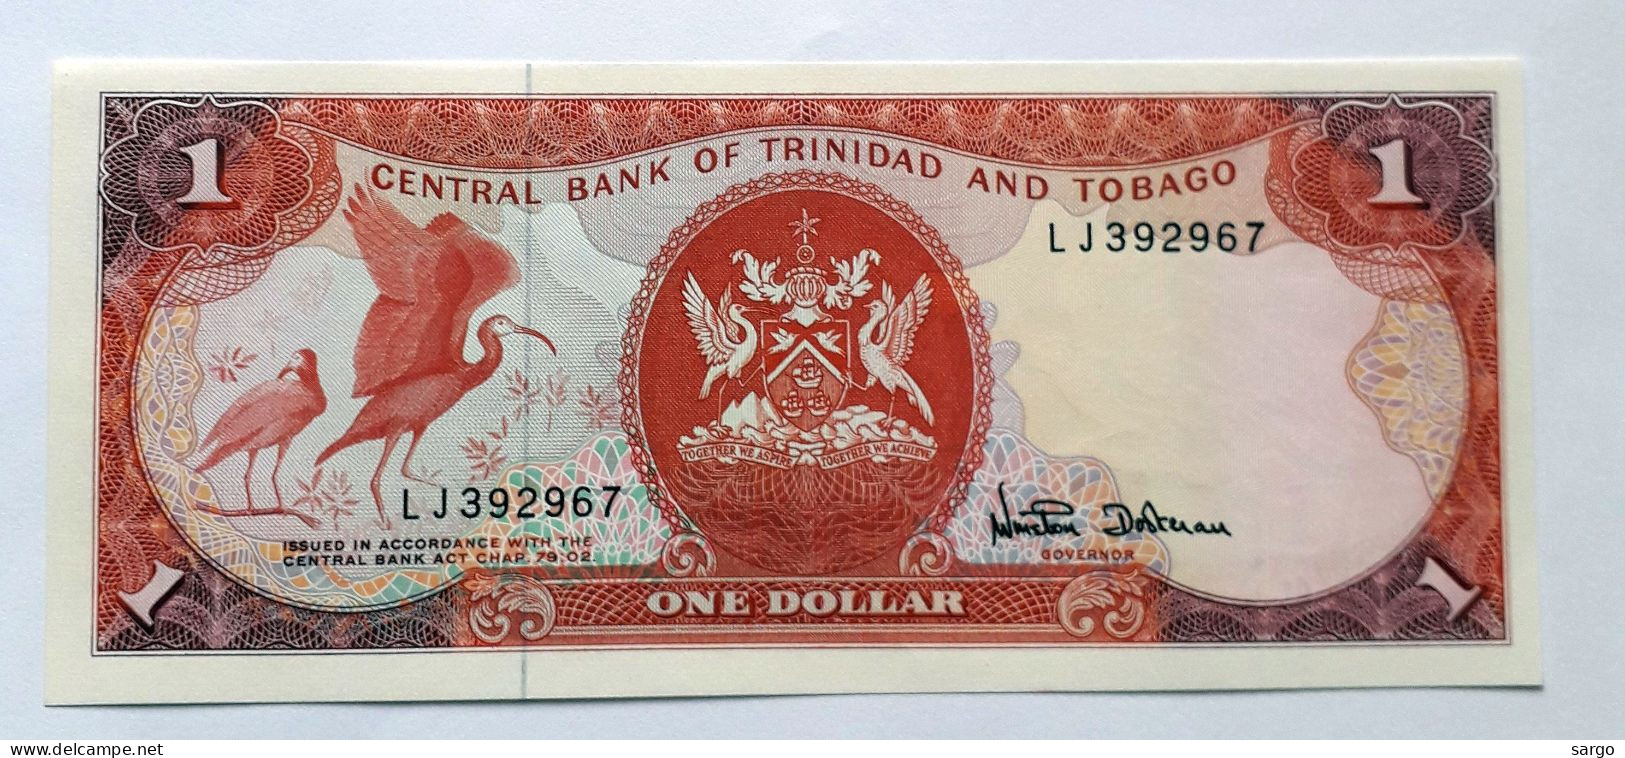 TRINIDAD AND TOBAGO  - 1 DOLLAR  - P 36  (1985) - UNC -  BANKNOTES - PAPER MONEY - Trinité & Tobago